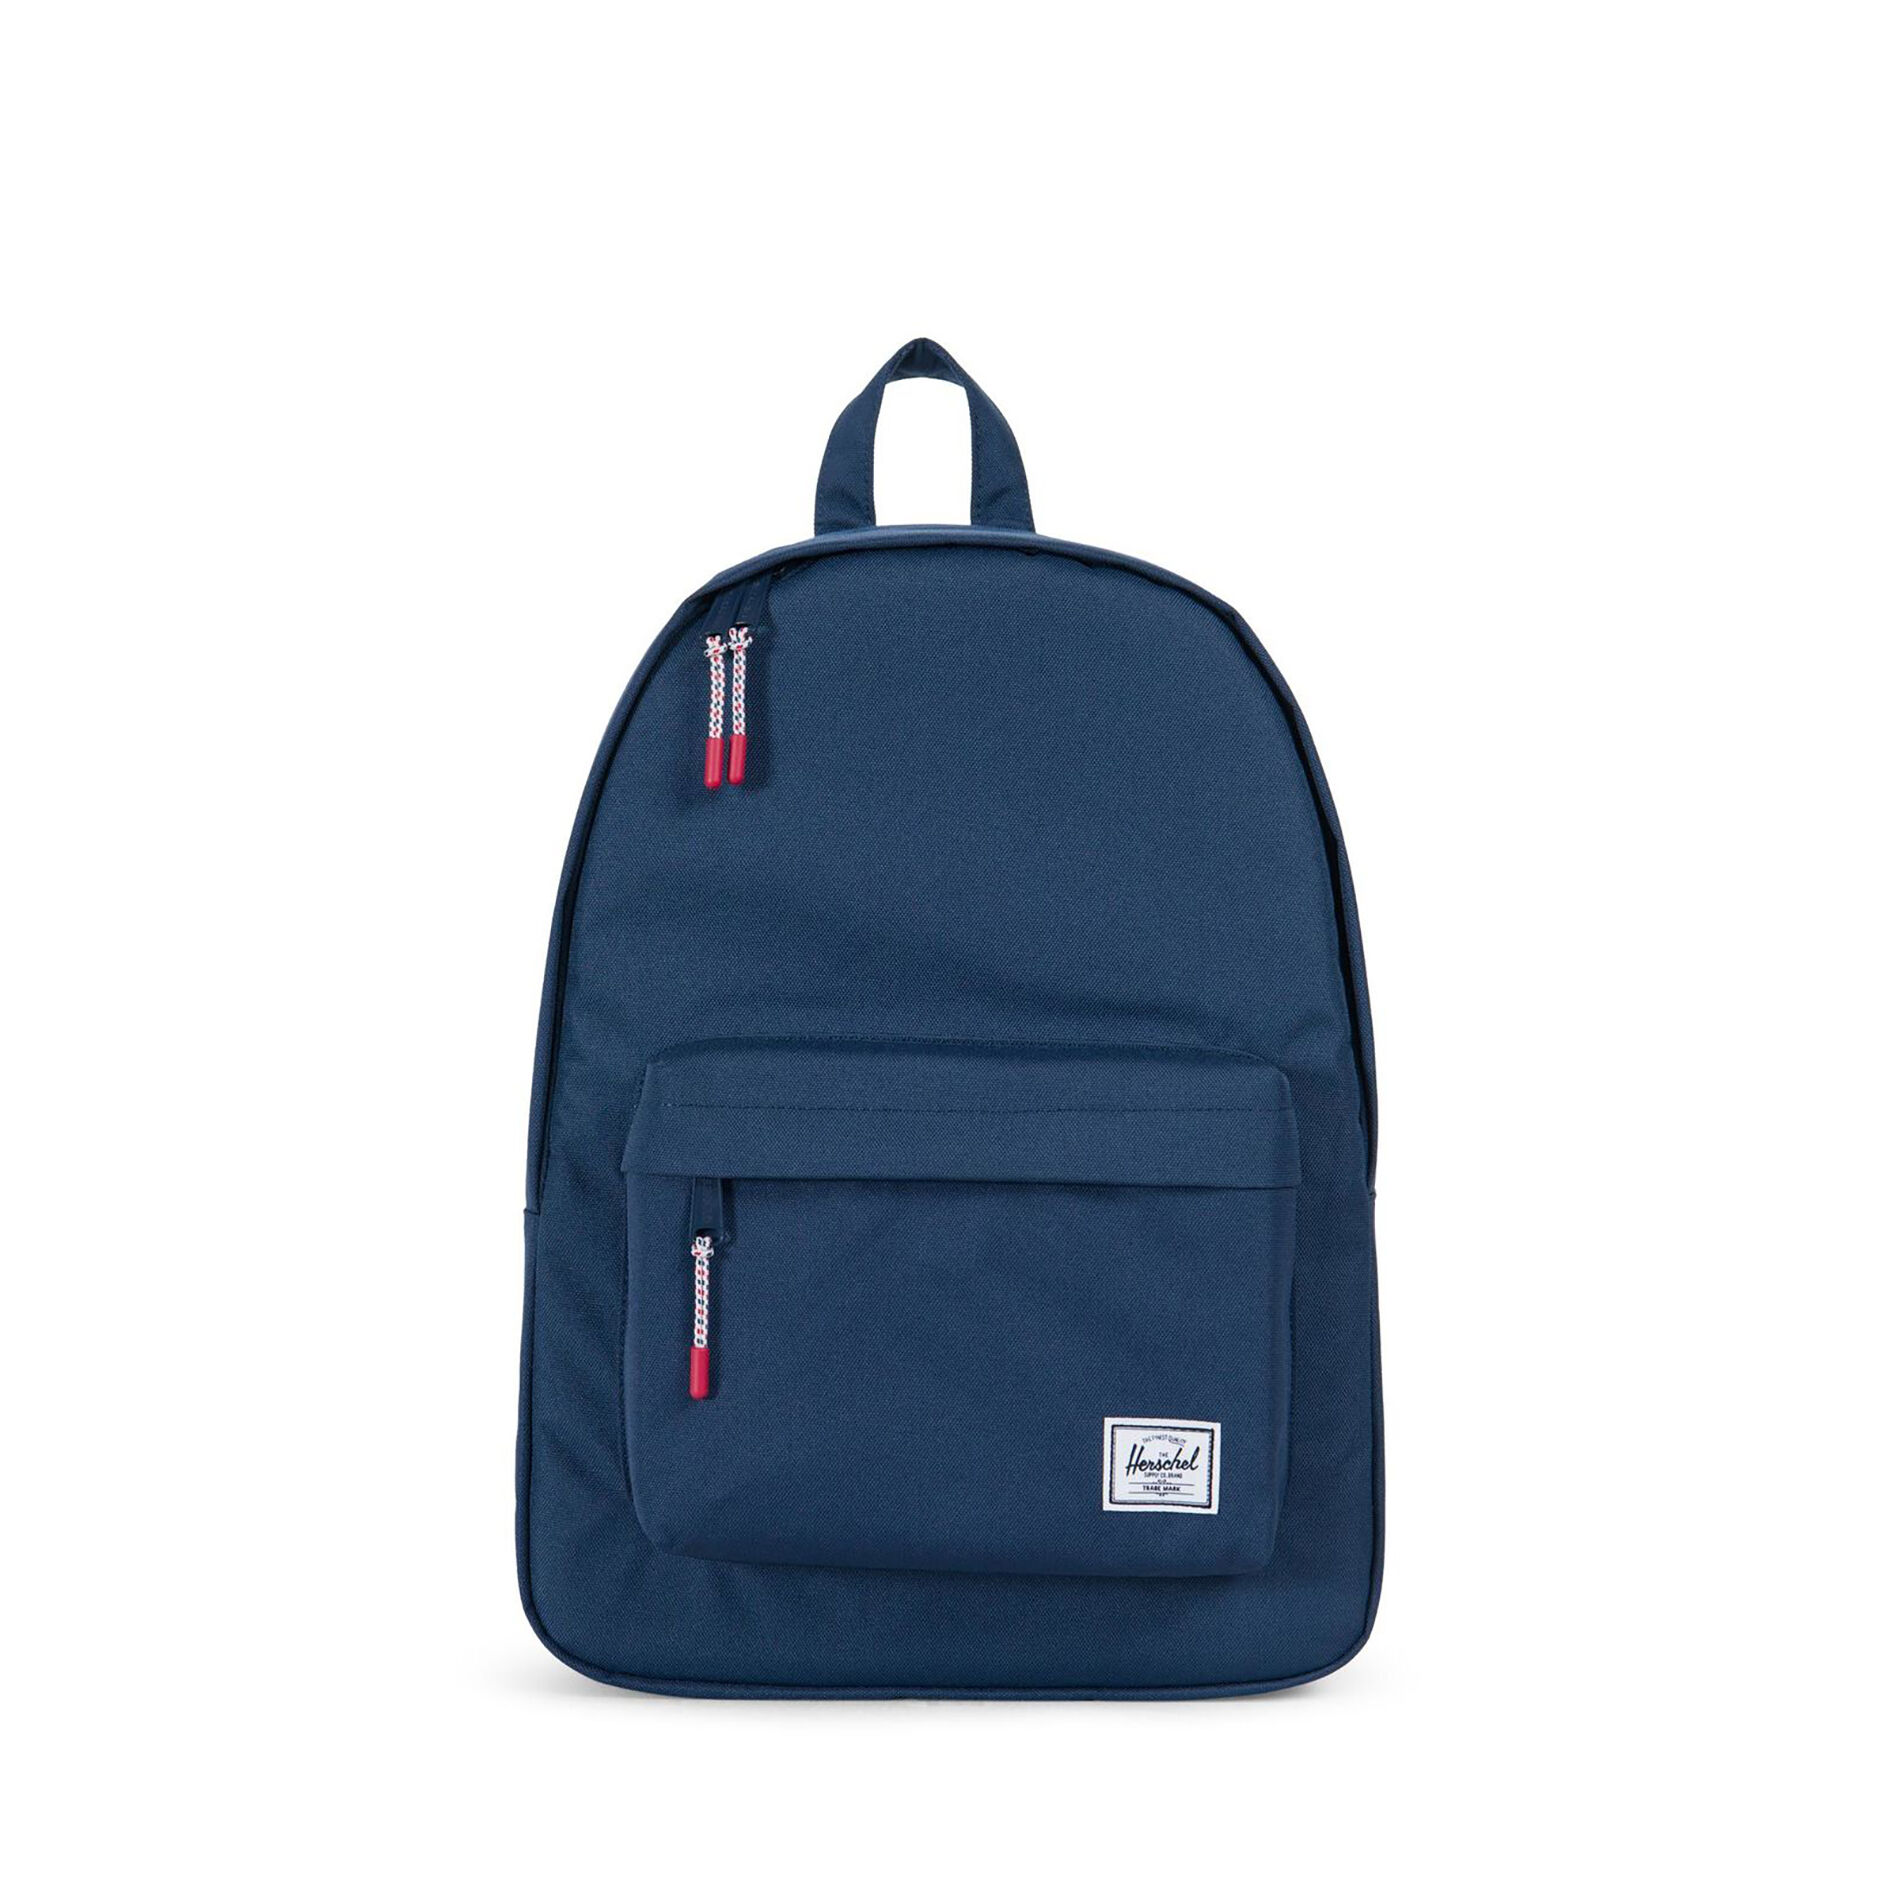 Branded Herschel Classic Backpack Navy